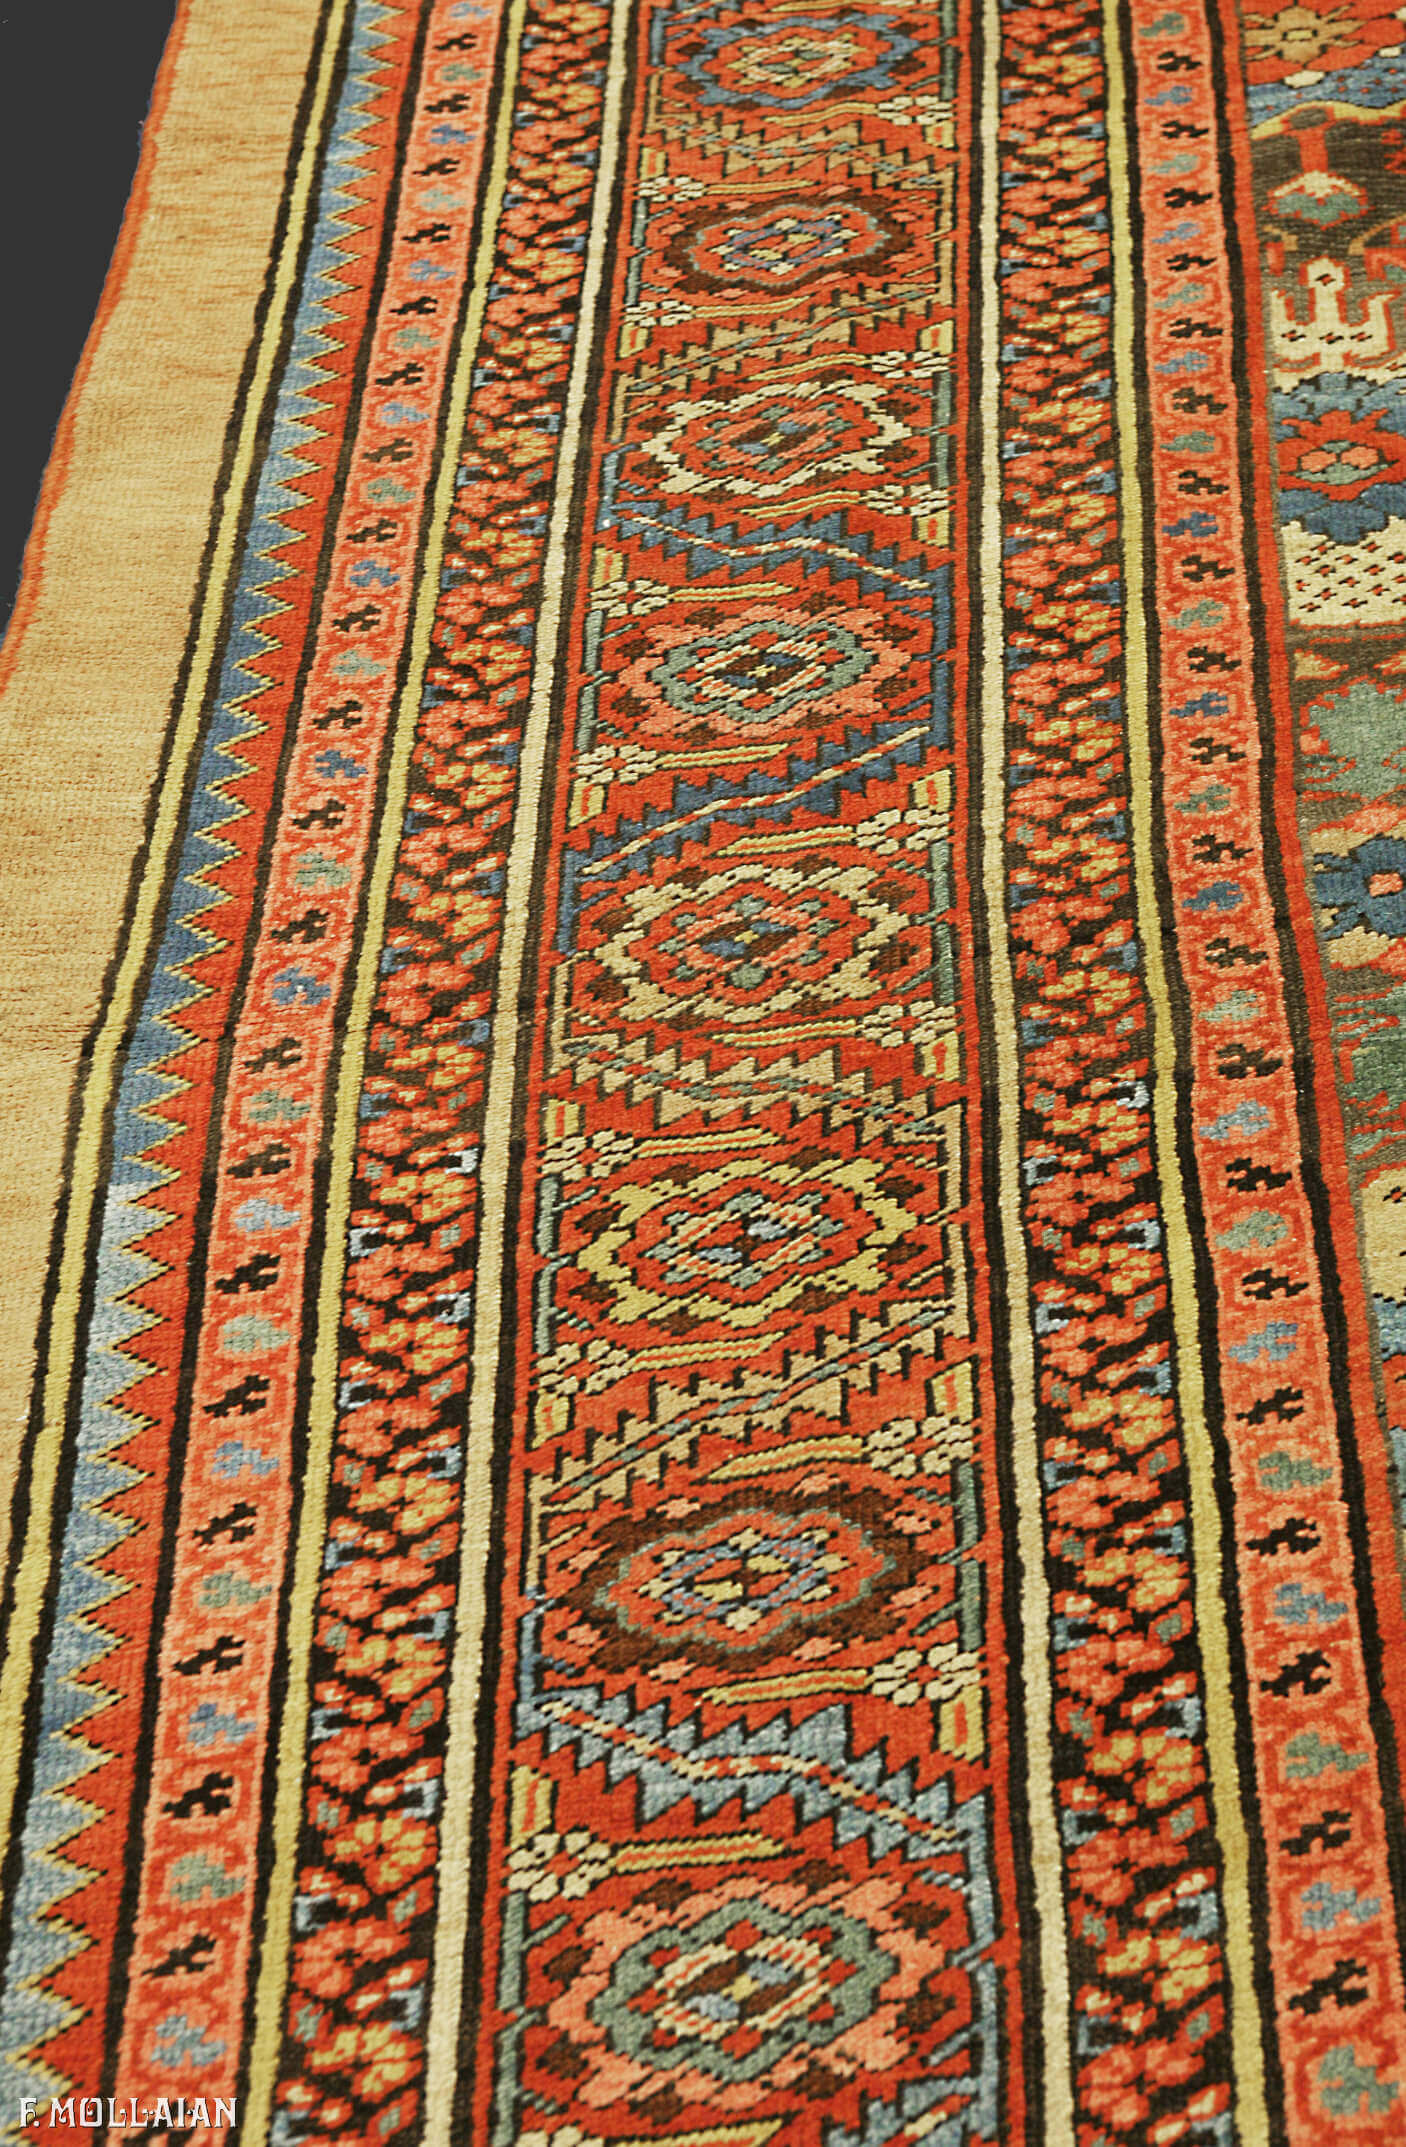 A Large Antique Persian Bakshaish Carpet n°:29041726